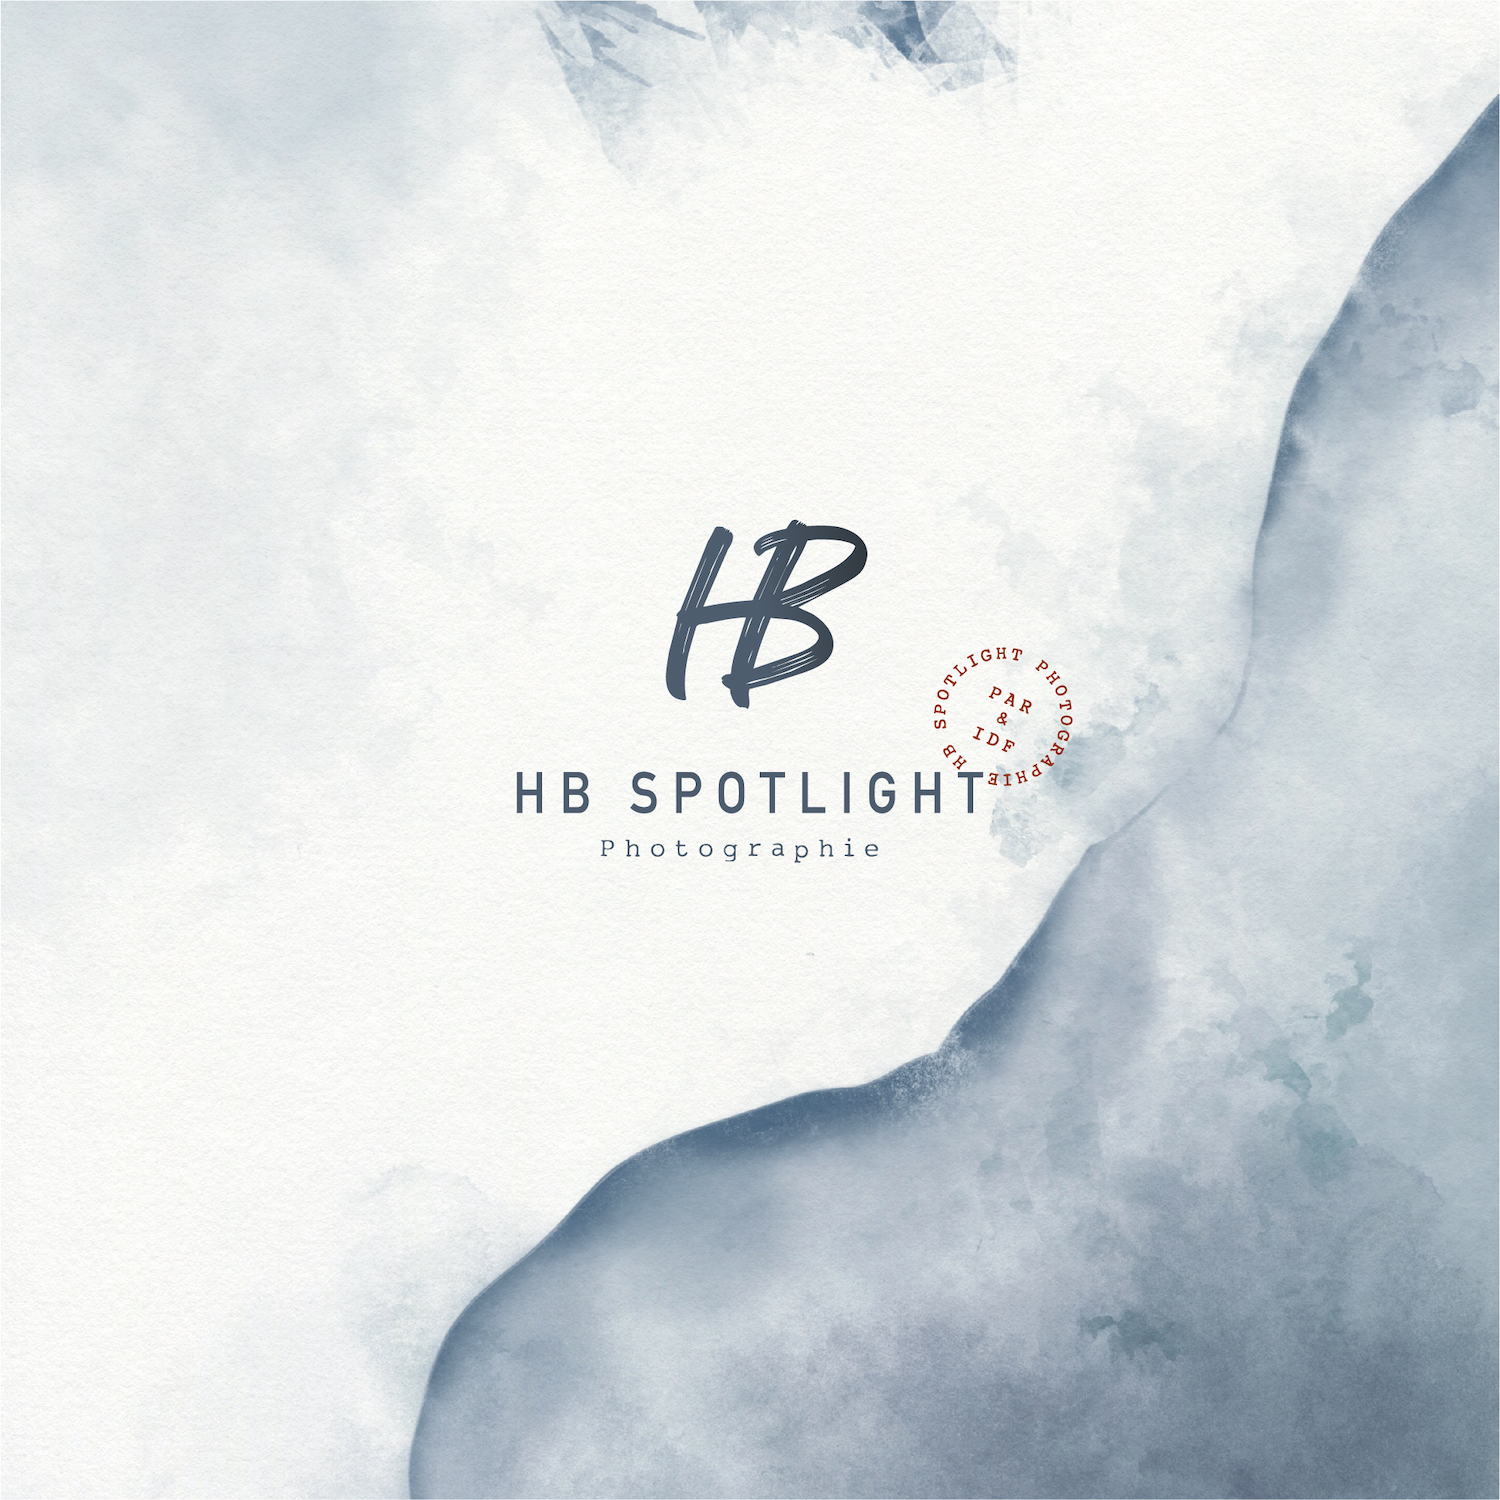 HB Spotlight